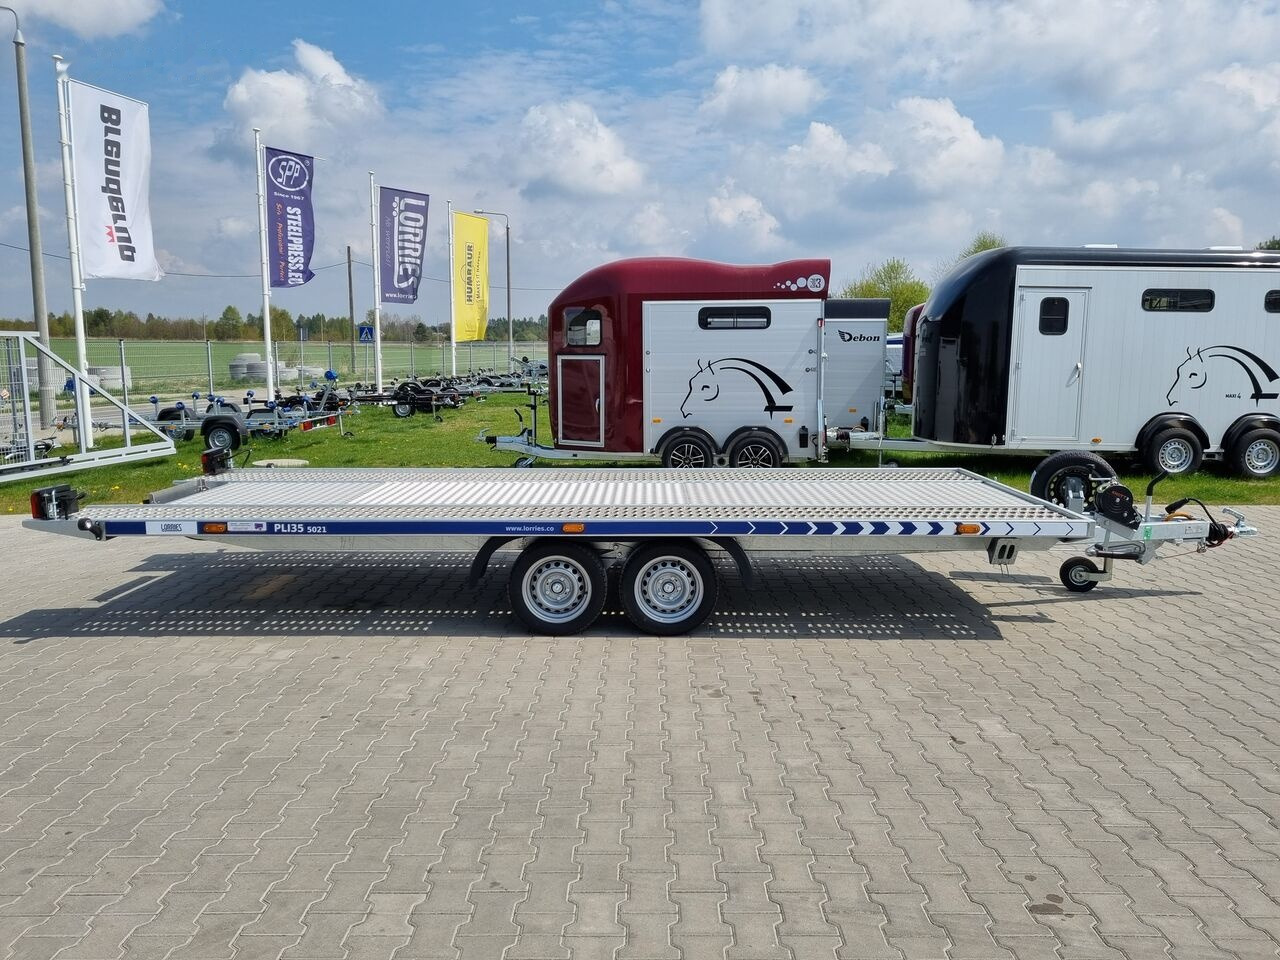 جديدة مقطورة شحن نقل السيارات Lorries PLI-35 5021 car trailer 3.5t GVW tilting platform 500 x 210 cm: صورة 4